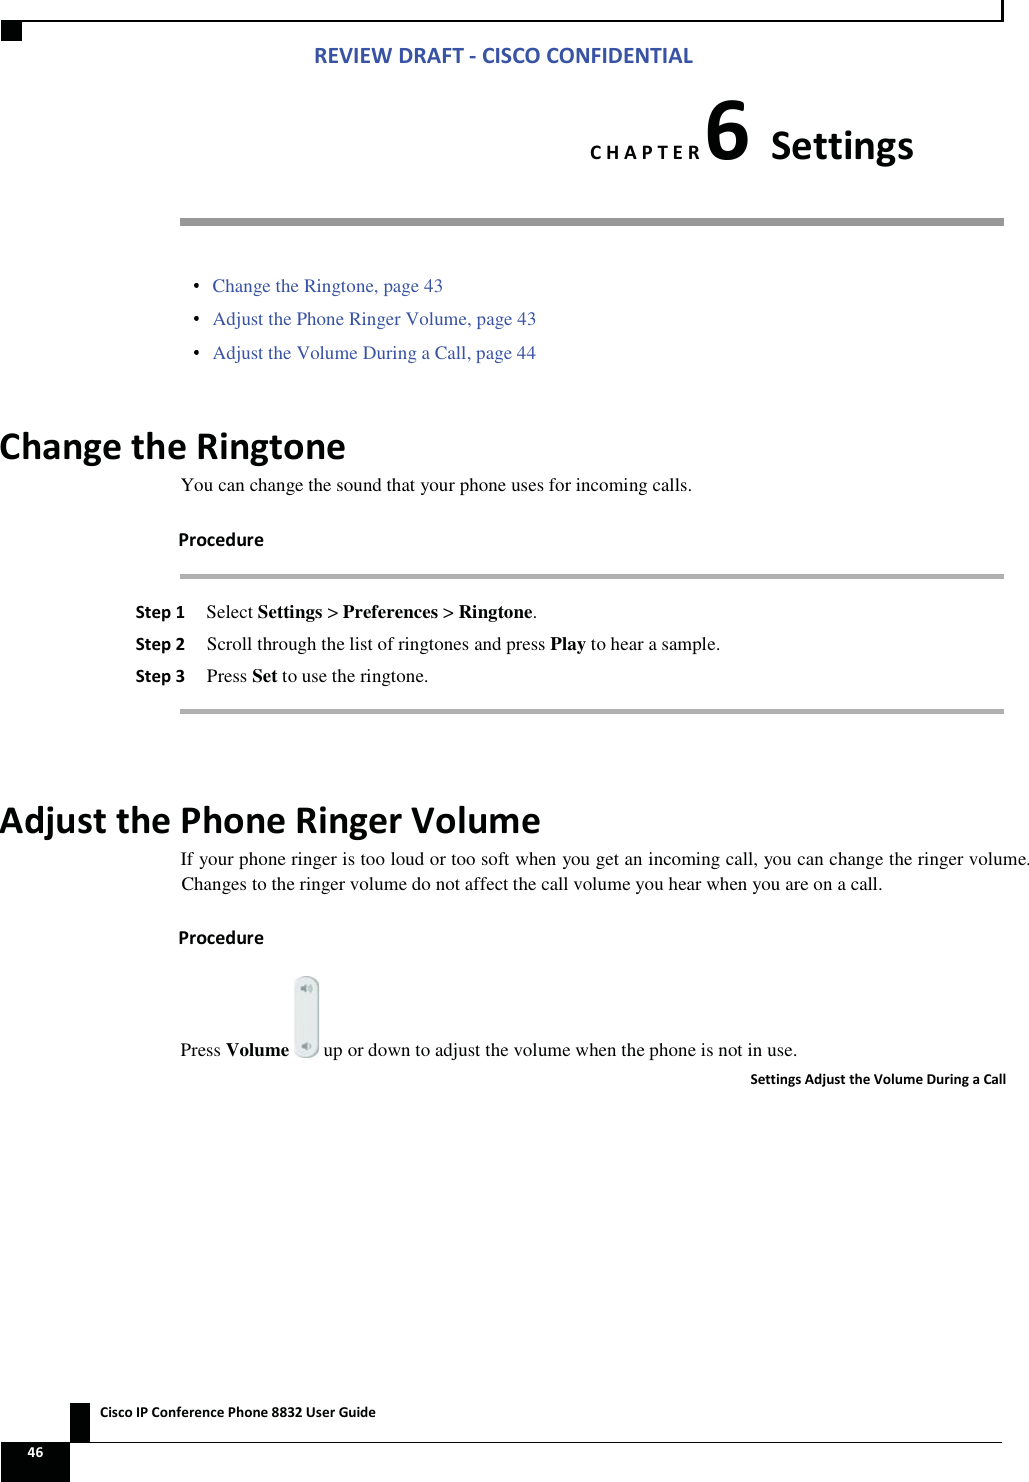 Zs/tZ&amp;dͲ/^KKE&amp;/Ed/&gt;   ŝƐĐŽ/WŽŶĨĞƌĞŶĐĞWŚŽŶĞϴϴϯϮhƐĞƌ&apos;ƵŝĚĞ ϰϲ  ,WdZϲ^ĞƚƚŝŶŐƐ  Change the Ringtone, page 43  Adjust the Phone Ringer Volume, page 43  Adjust the Volume During a Call, page 44 ŚĂŶŐĞƚŚĞZŝŶŐƚŽŶĞYou can change the sound that your phone uses for incoming calls. WƌŽĐĞĚƵƌĞ ^ƚĞƉϭ Select Settings &gt; Preferences &gt; Ringtone. ^ƚĞƉϮ Scroll through the list of ringtones and press Play to hear a sample. ^ƚĞƉϯ Press Set to use the ringtone.  ĚũƵƐƚƚŚĞWŚŽŶĞZŝŶŐĞƌsŽůƵŵĞIf your phone ringer is too loud or too soft when you get an incoming call, you can change the ringer volume. Changes to the ringer volume do not affect the call volume you hear when you are on a call. WƌŽĐĞĚƵƌĞPress Volume   up or down to adjust the volume when the phone is not in use. ^ĞƚƚŝŶŐƐĚũƵƐƚƚŚĞsŽůƵŵĞƵƌŝŶŐĂĂůů 